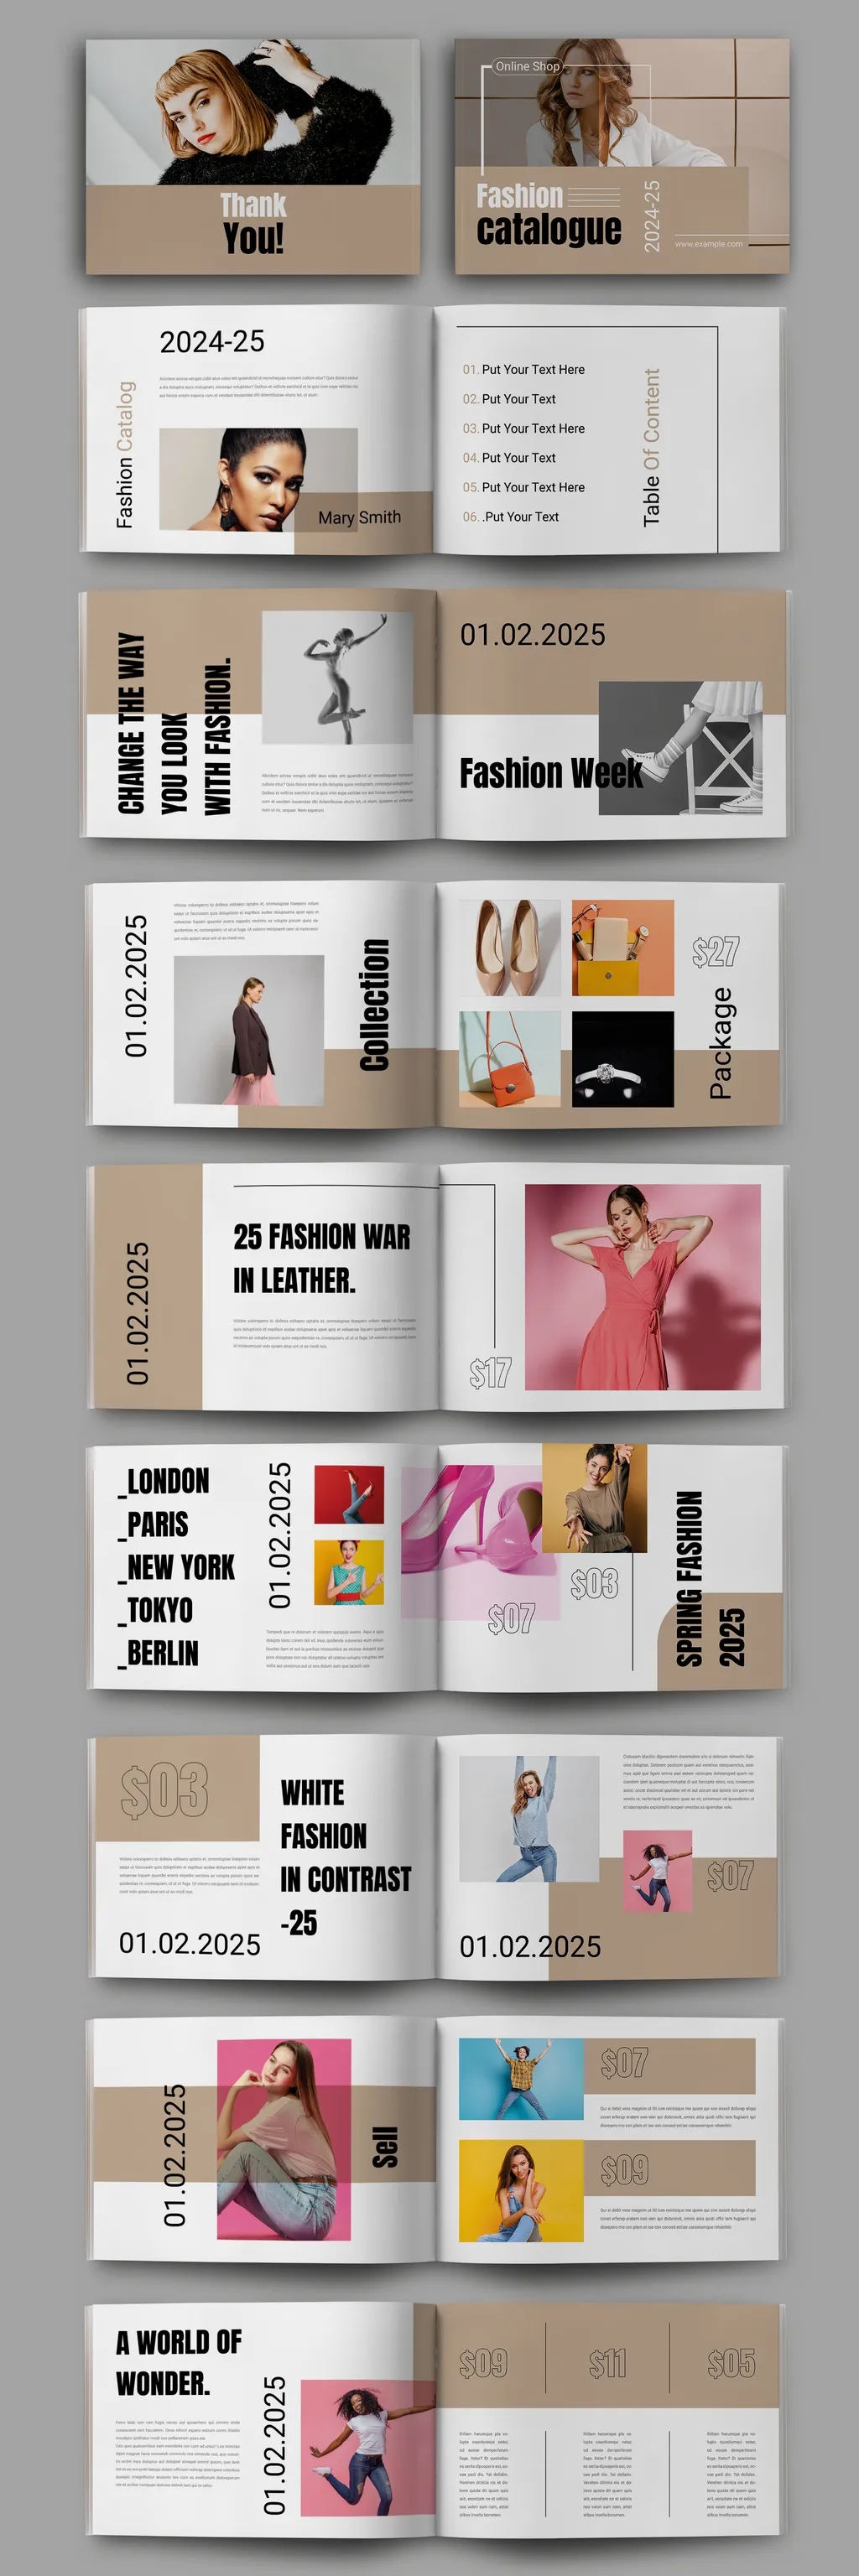 Adobestock - Fashion Catalog Magazine Layout 739429636